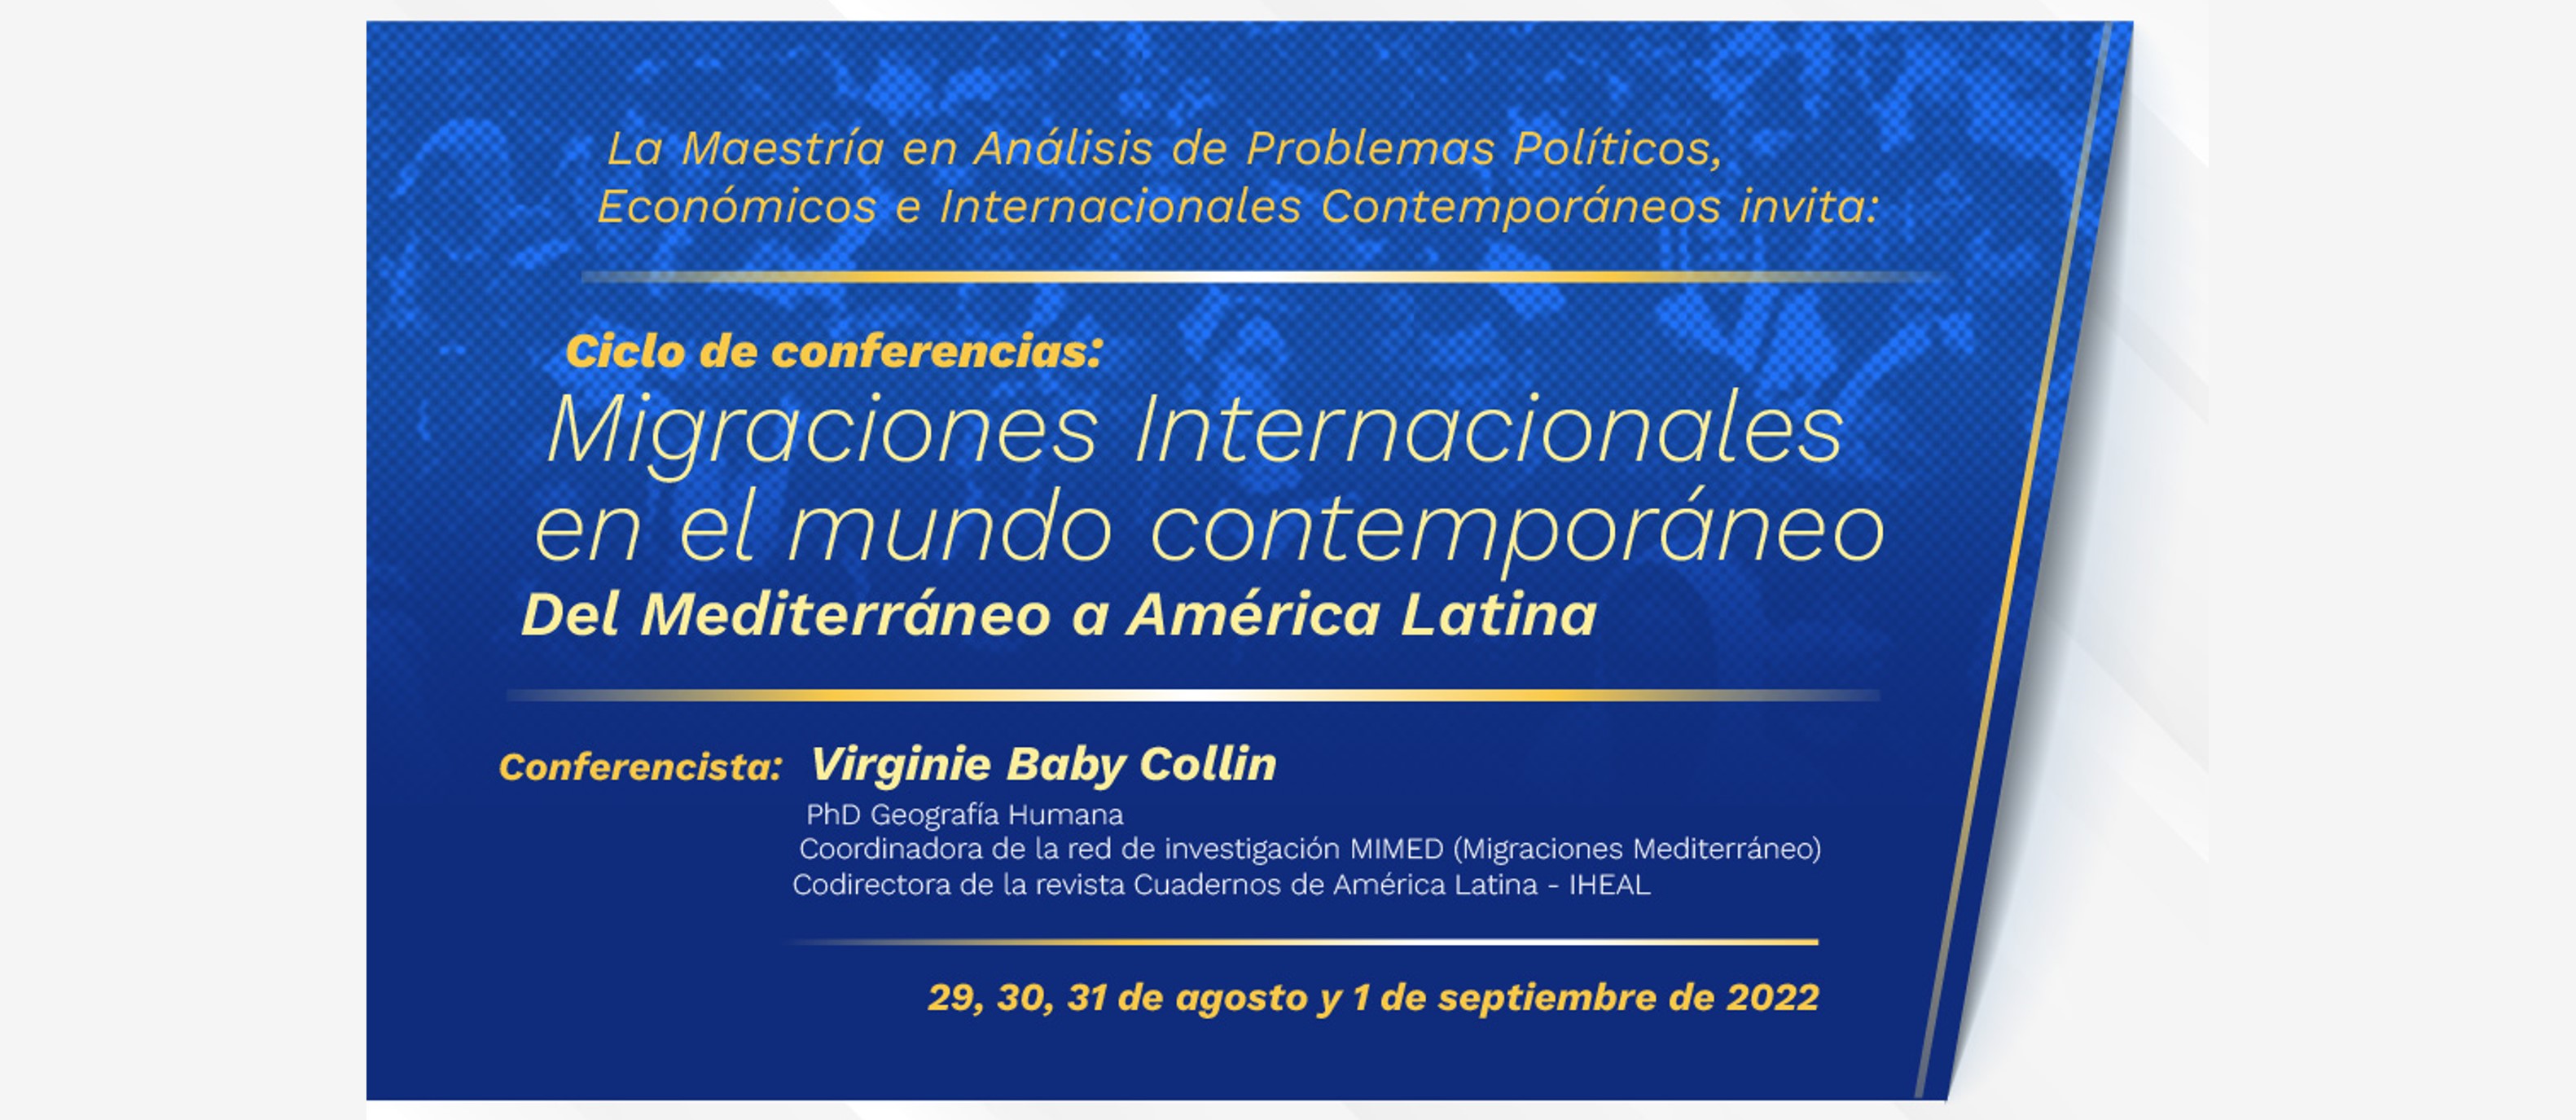 La Academia Diplomática invita al ciclo de conferencias 'Migraciones internacionales en el mundo contemporáneo: del Mediterráneo a América latina'